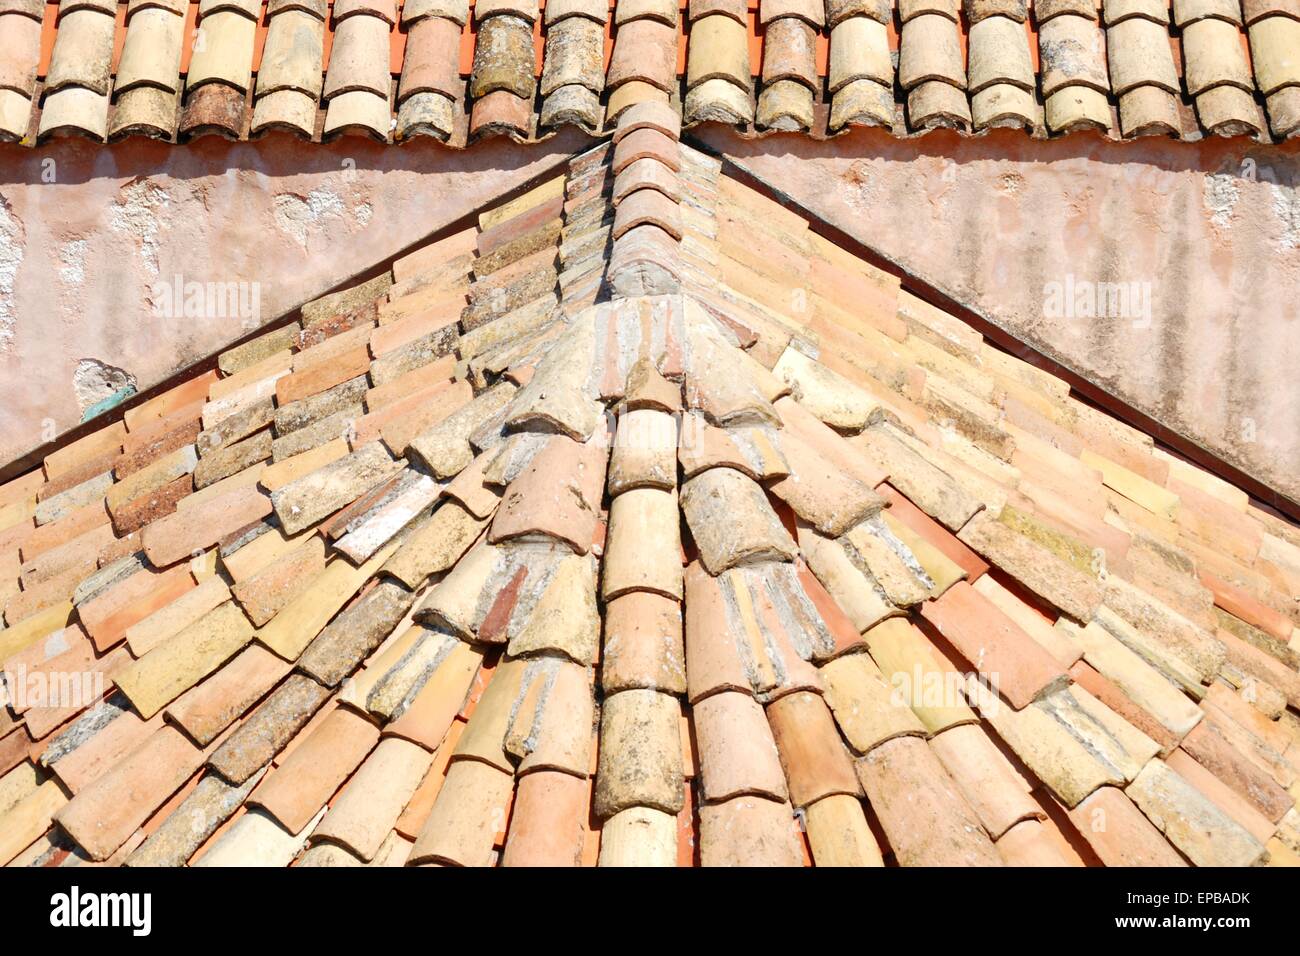 Tuiles de toit en terre cuite en forme de ventilateur Banque D'Images